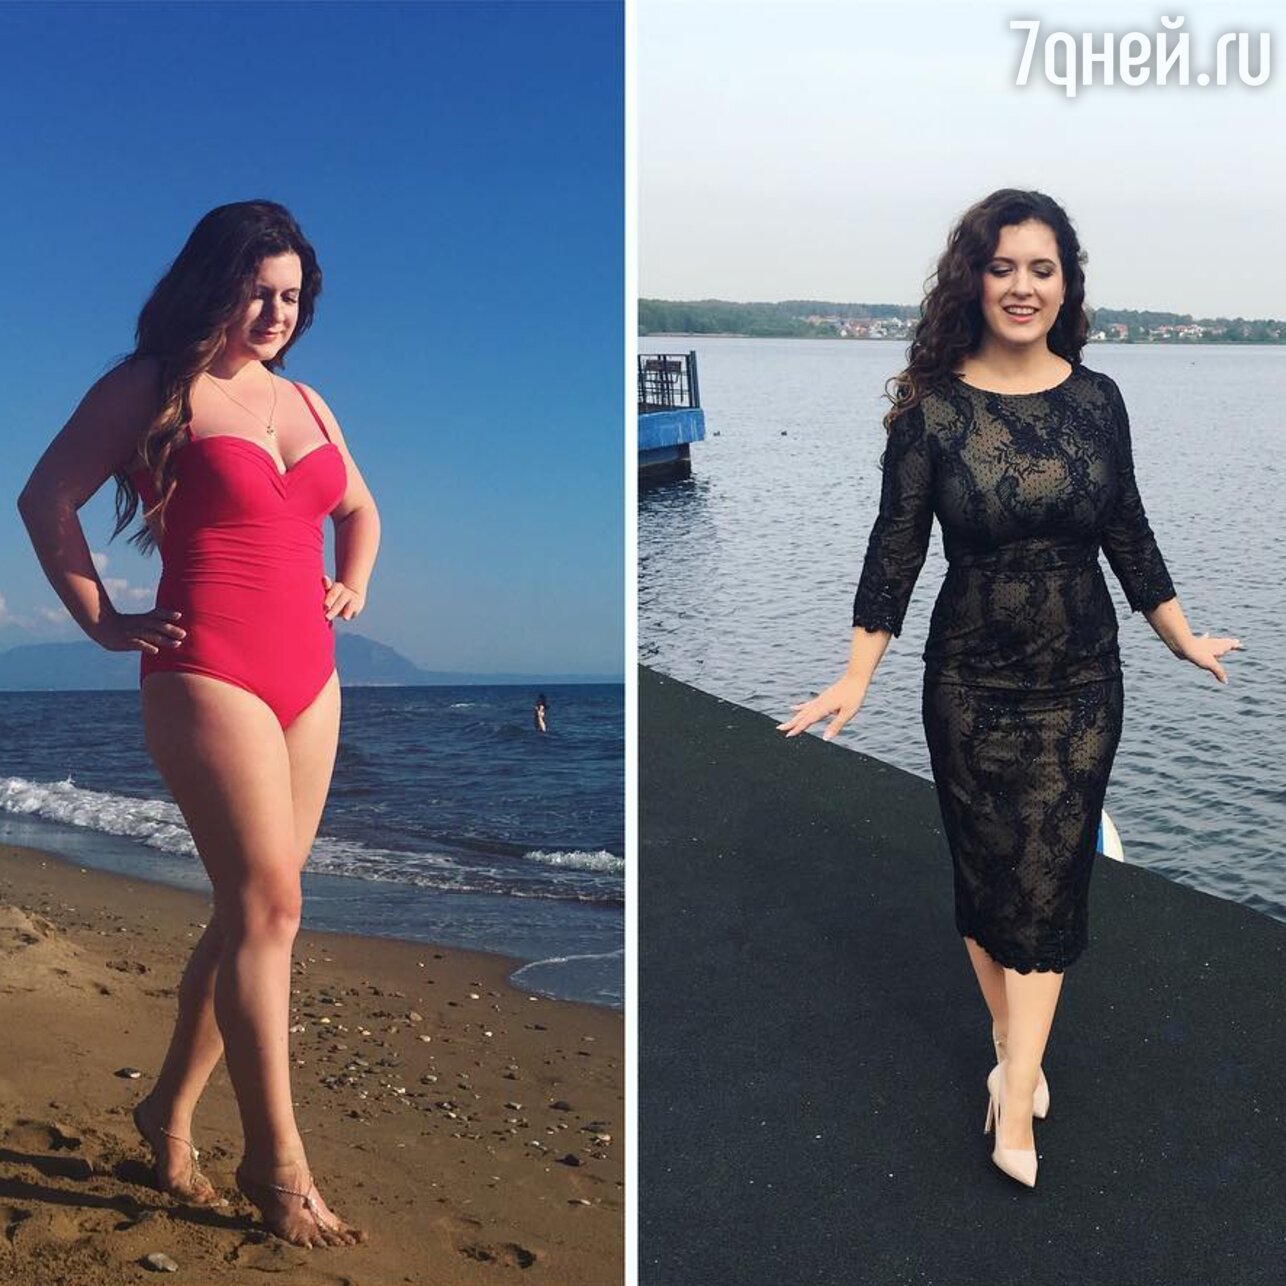 Анастасия Денисова похудела на шесть килограммов за месяц